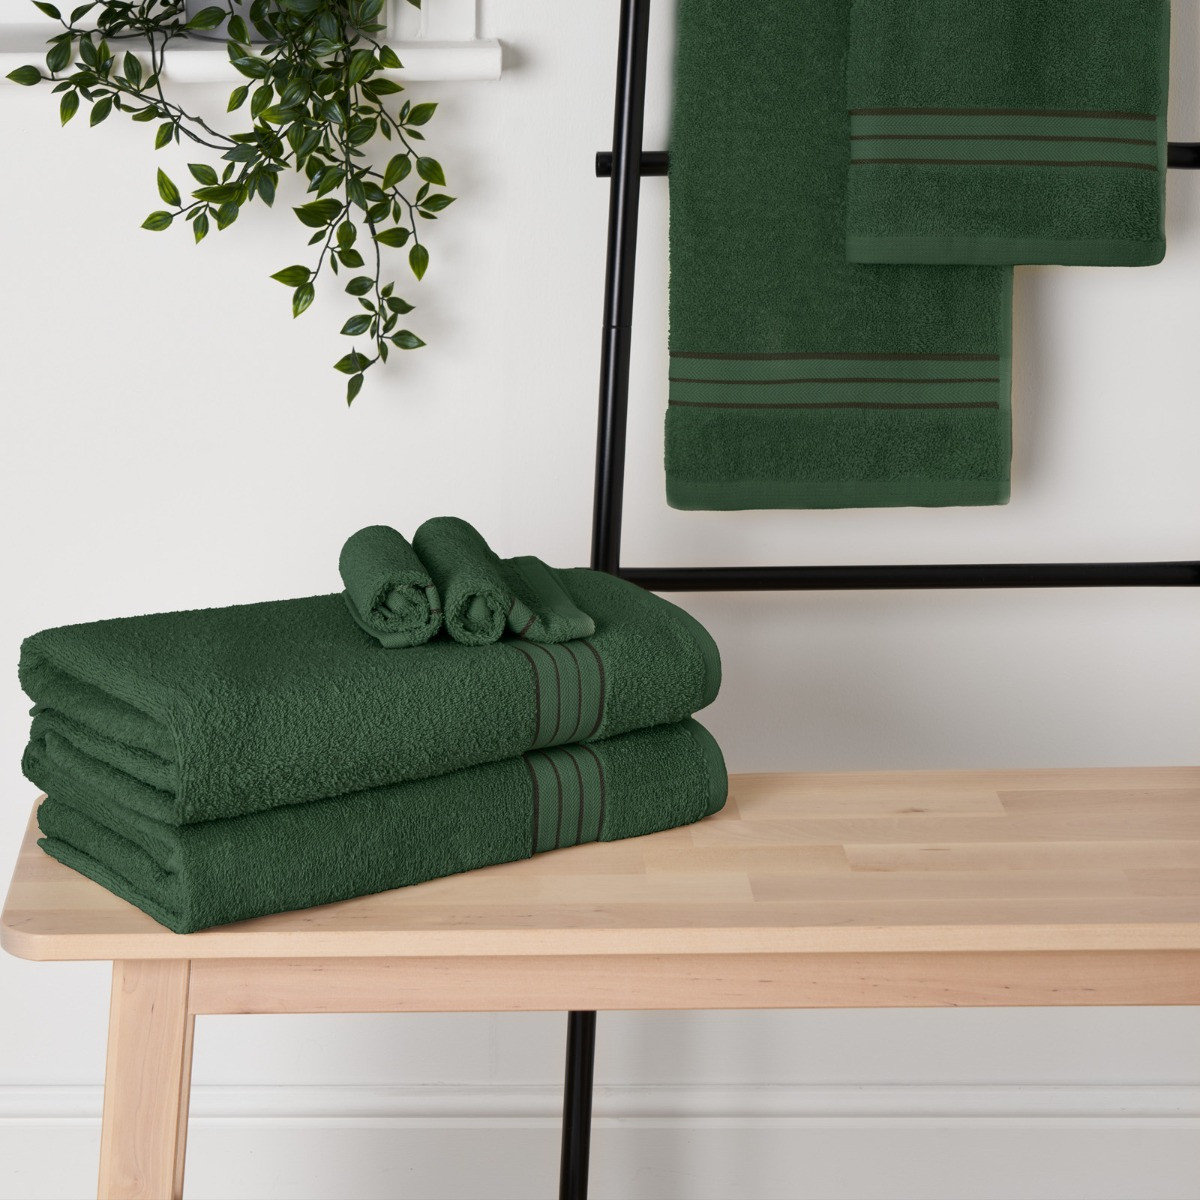 Brentfords 100% Cotton Bath Sheet, Forest Green - 1PC>